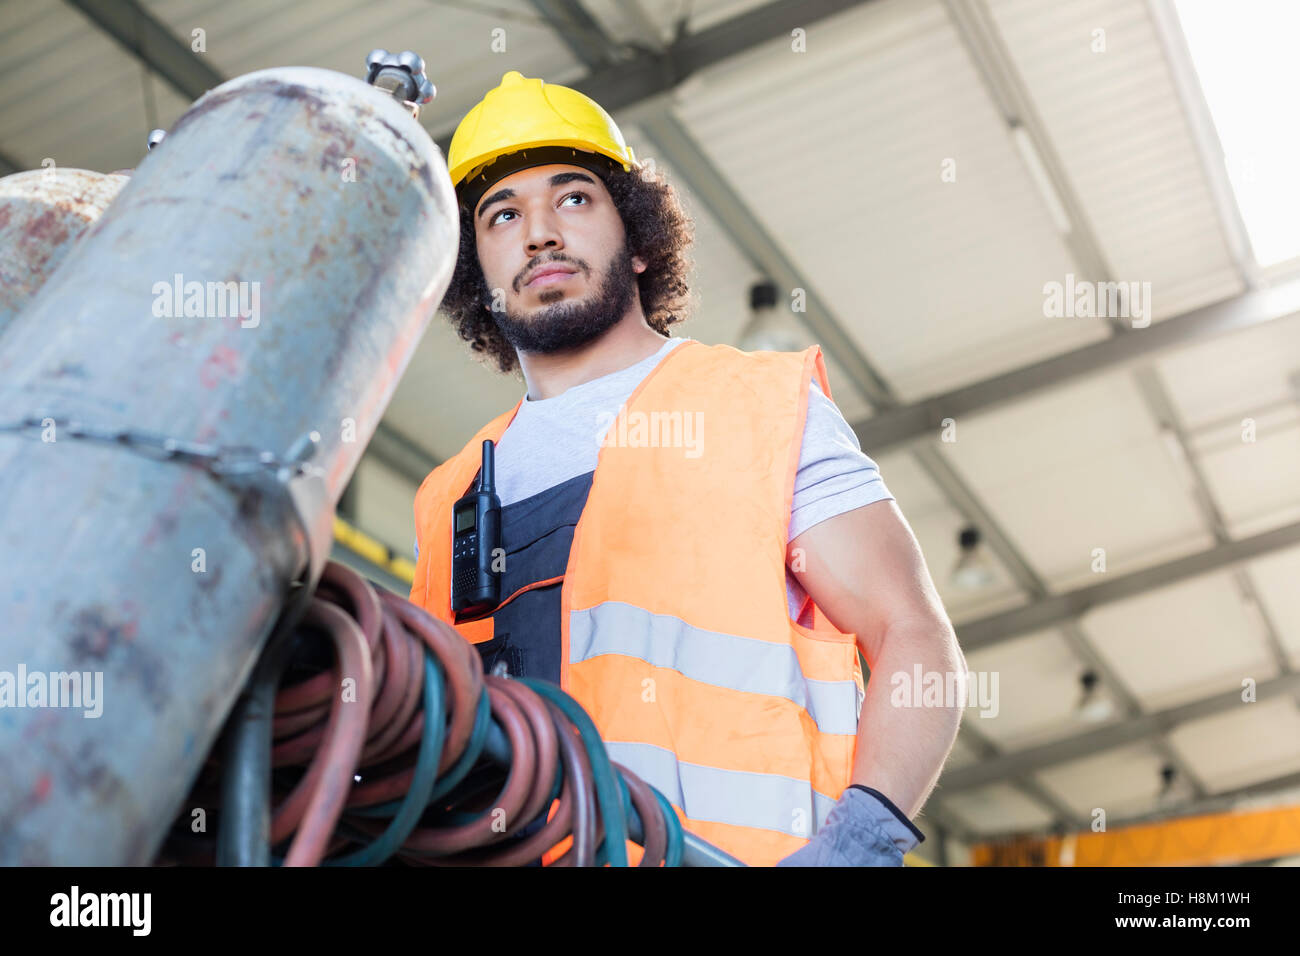 Basso angolo vista del giovane lavoratore manuale muovendo la bombola di gas nel settore metalmeccanico Foto Stock